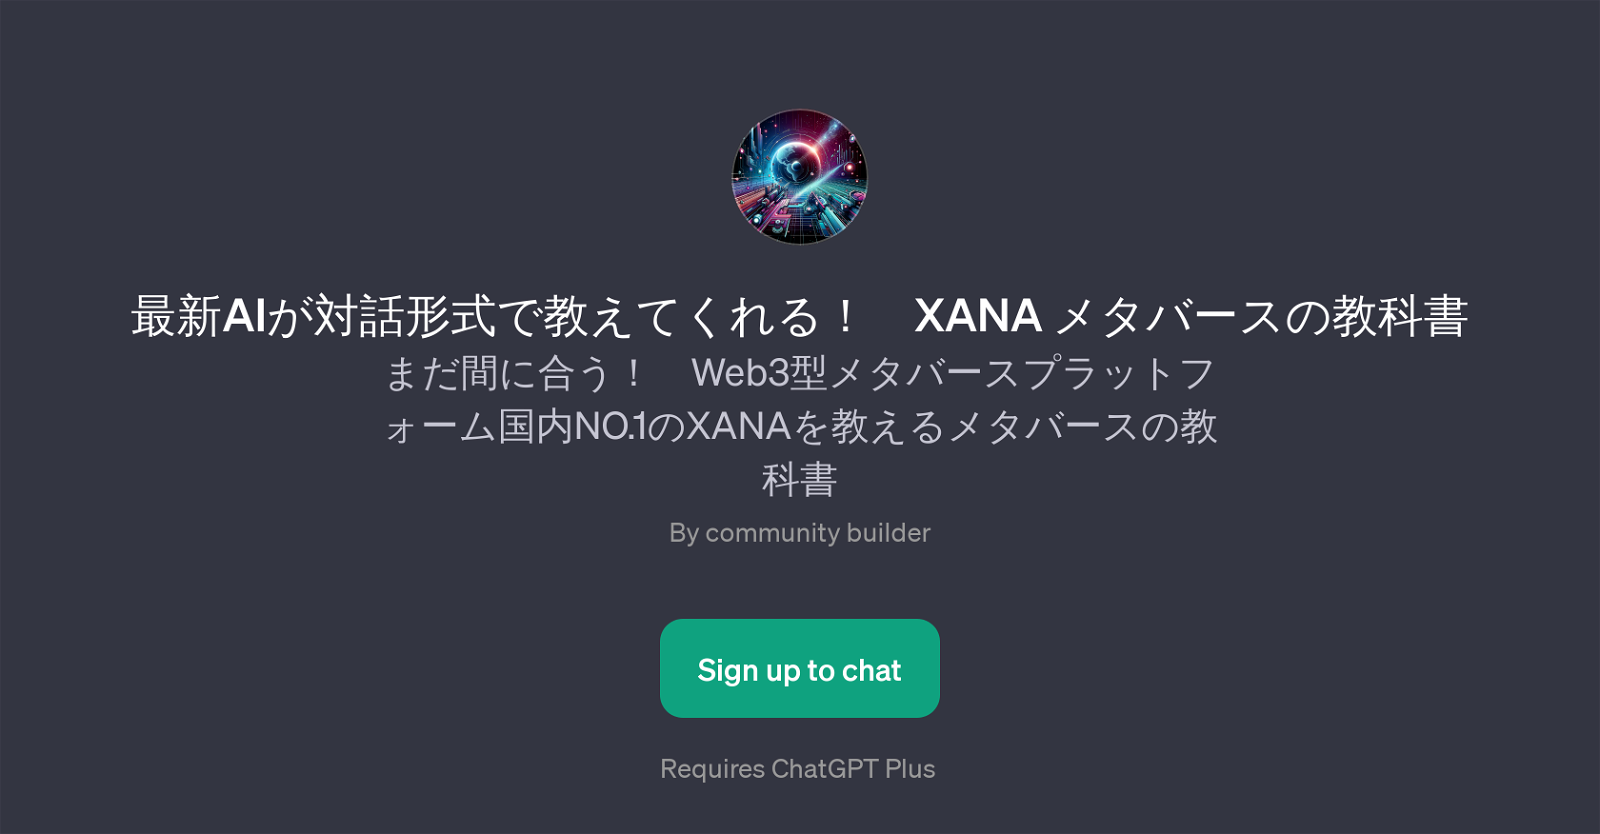 XANA website